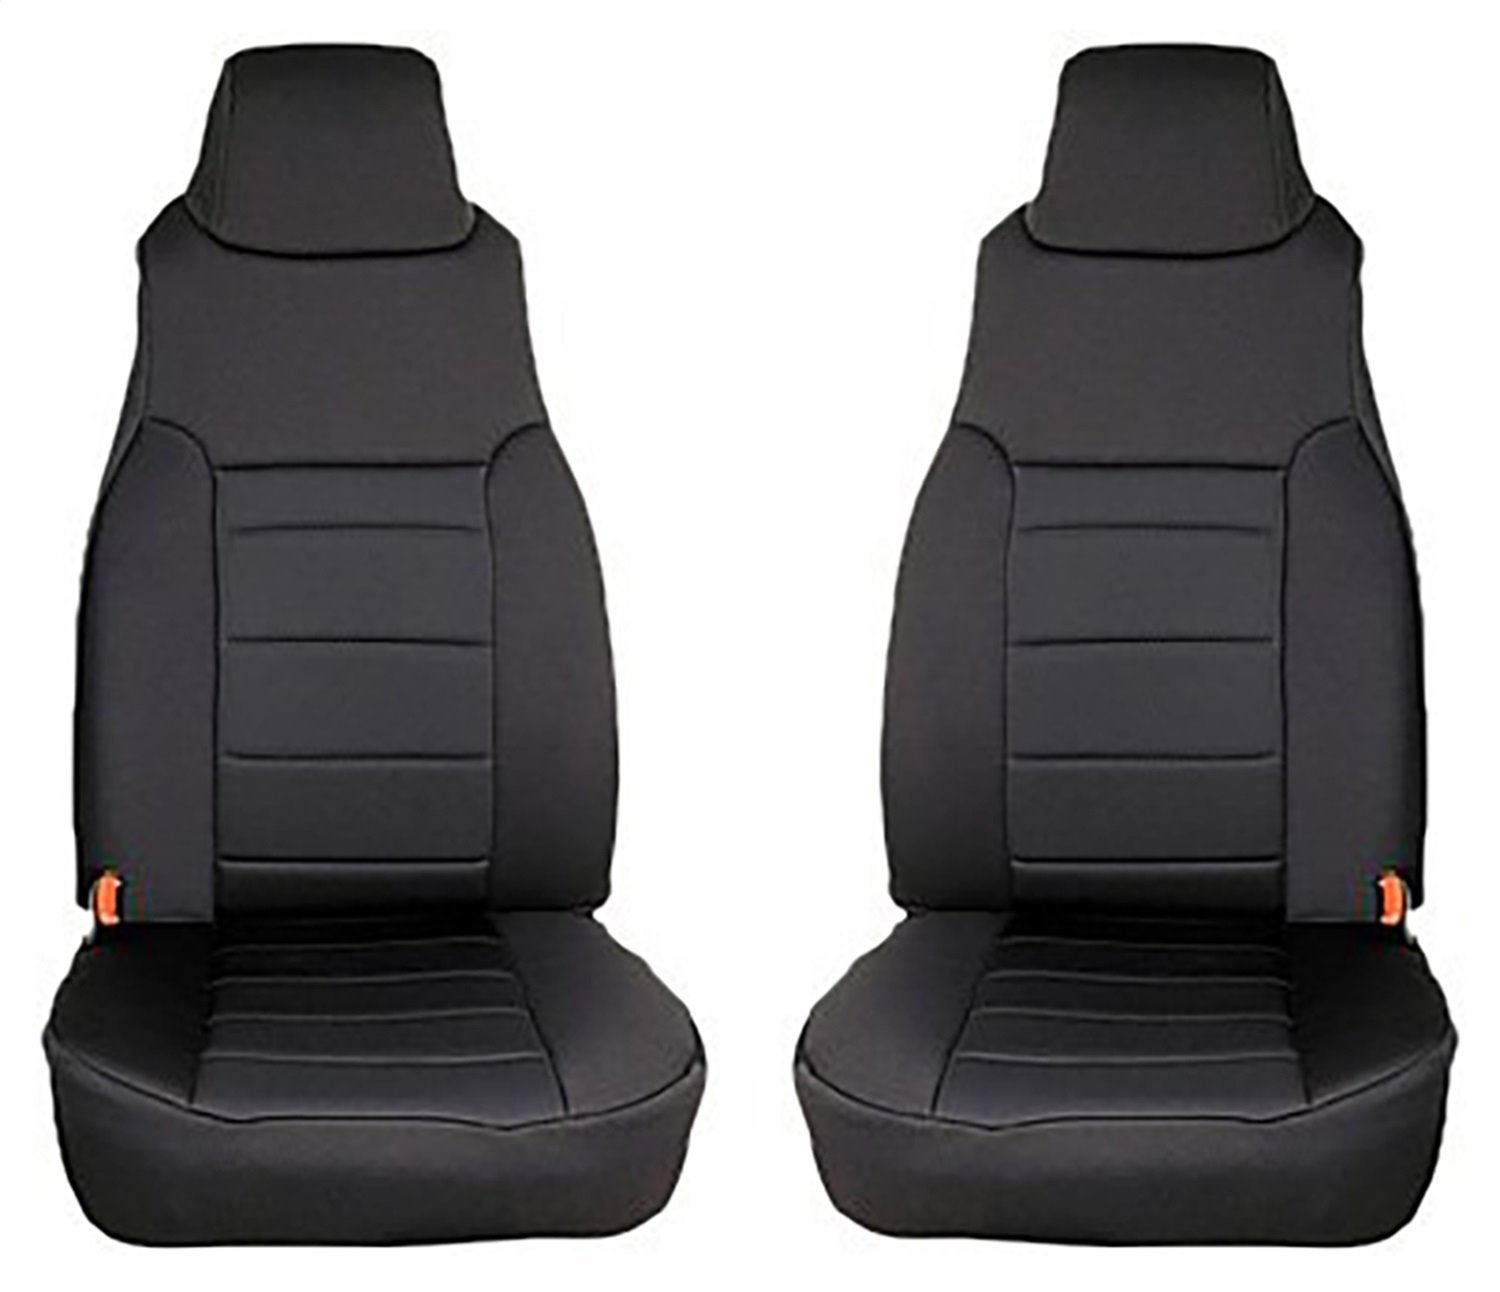 Neoprene Front Seat Covers for 1997-2002 TJ Wrangler [Black]